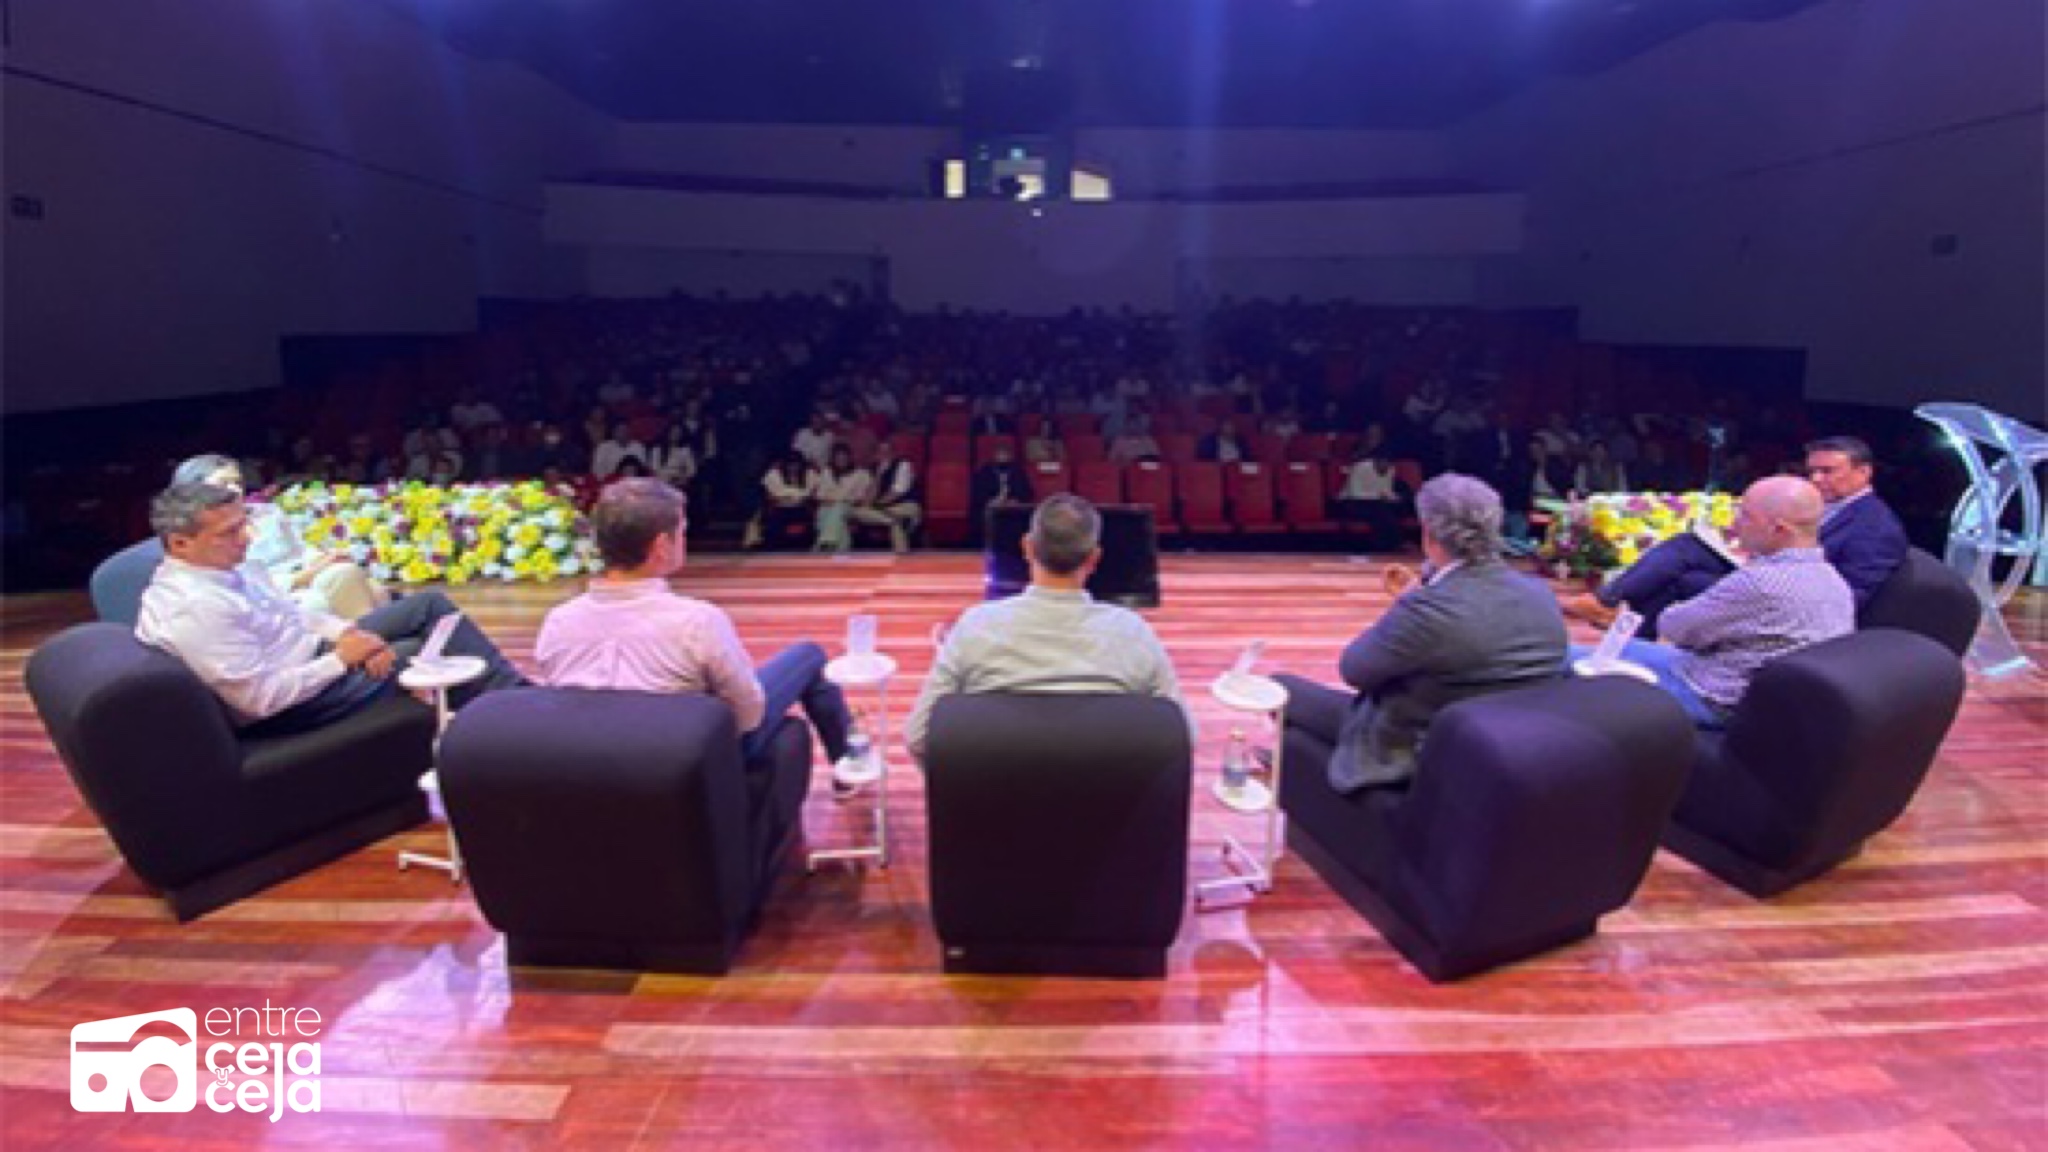 Cornare se reunió en La Ceja para hablar de los avances y retos frente a la Economía Circular